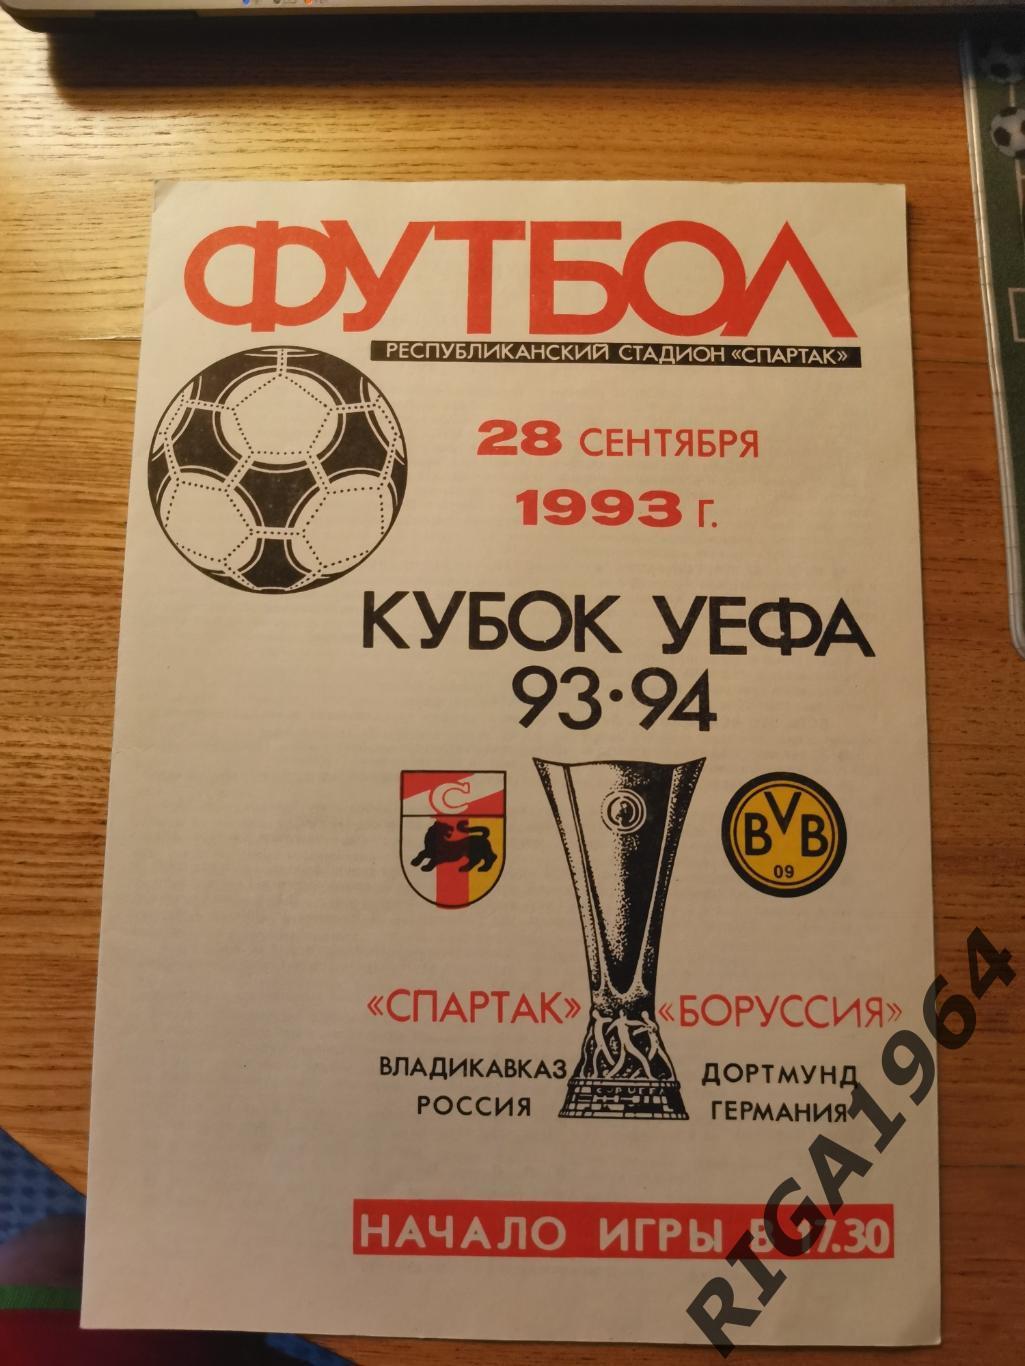 Кубок УЕФА 1993/94 Спартак Владикавказ-Боруссия Дортмунд, Германия (Офиц.)